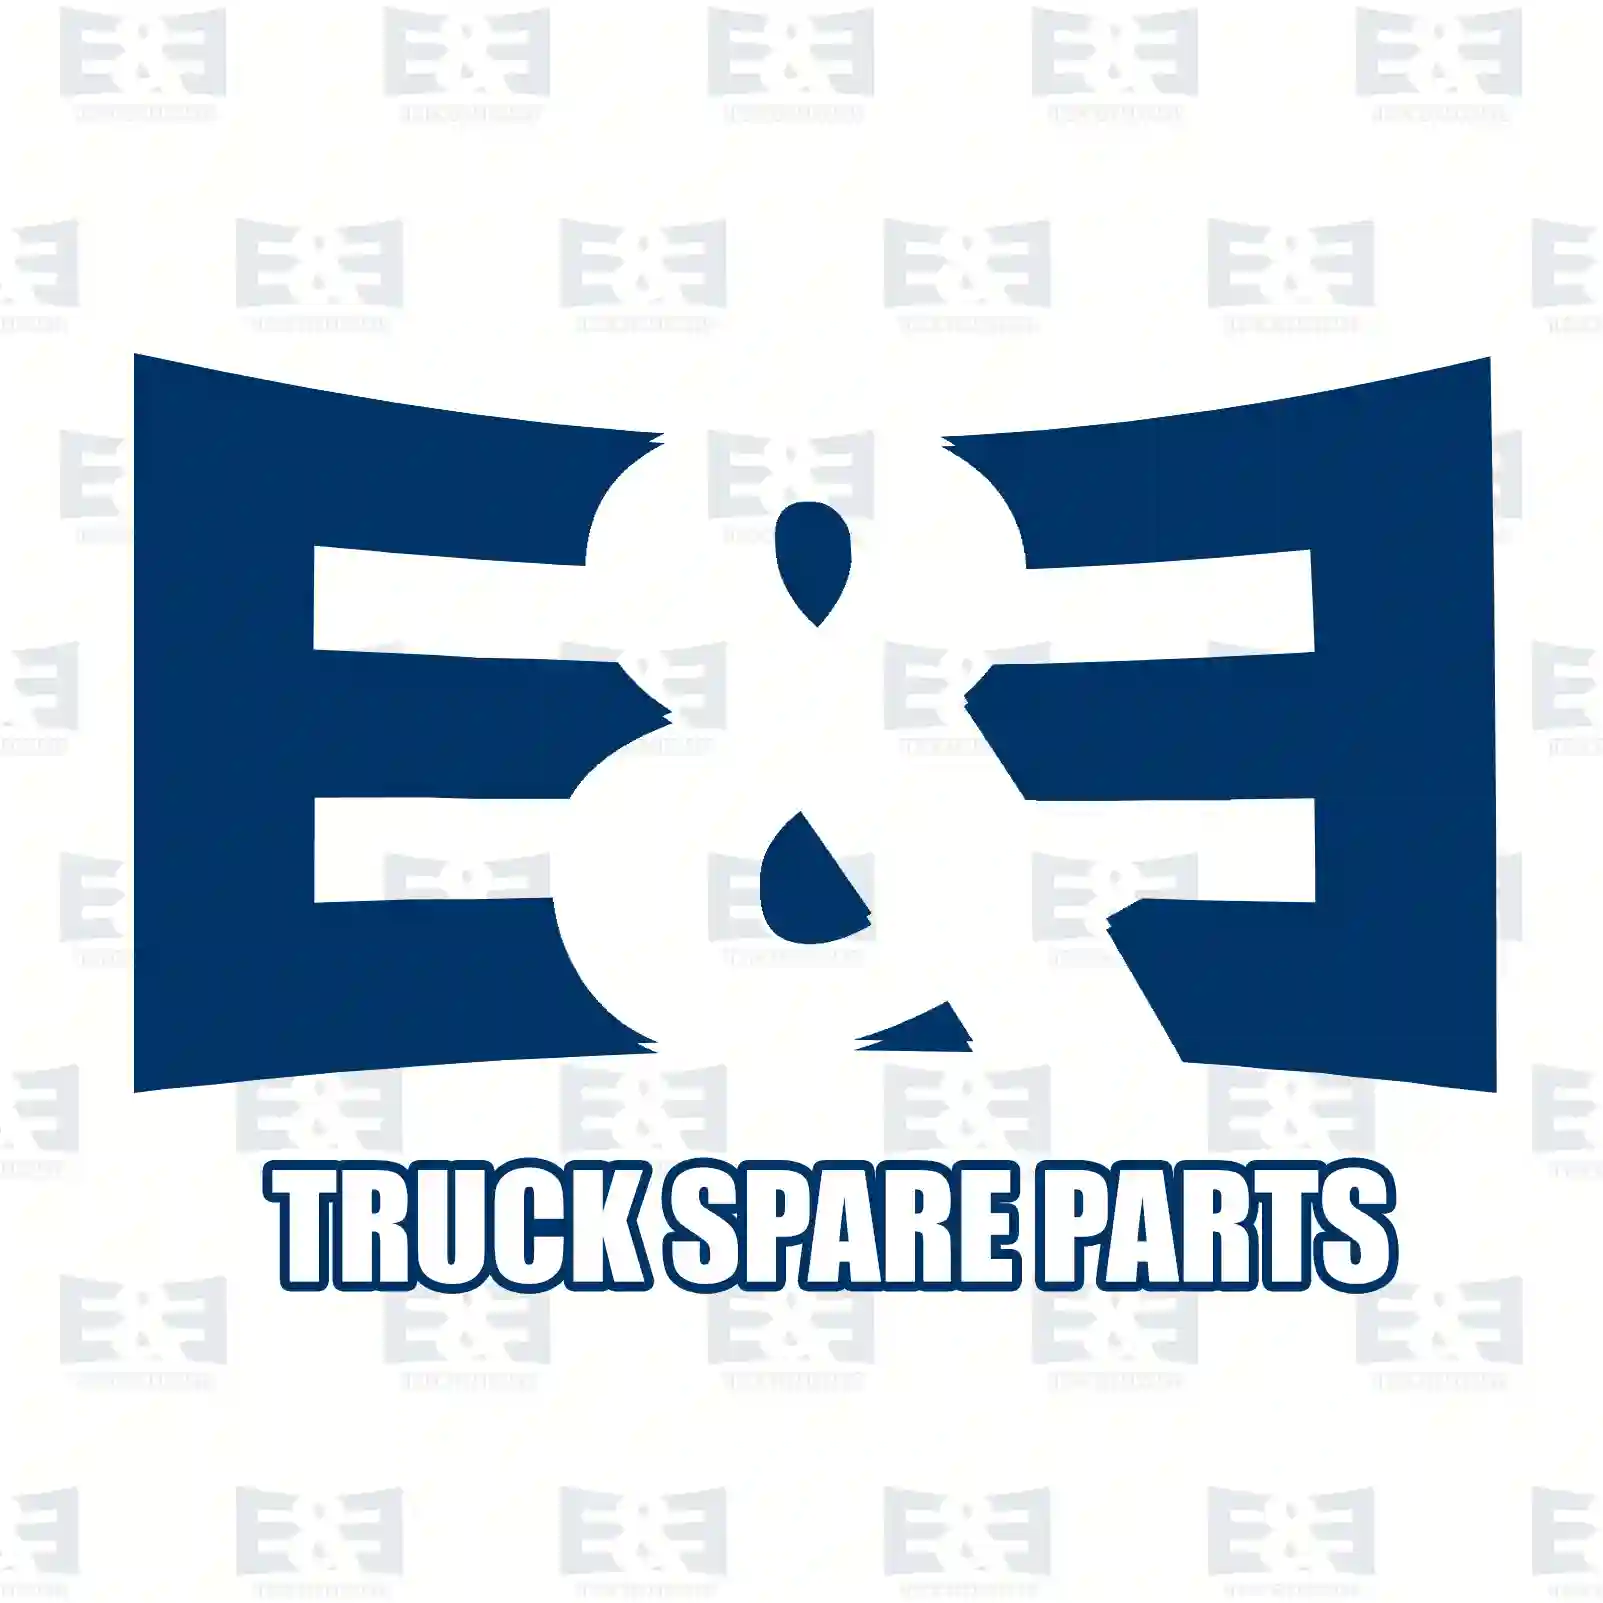 Step well case, right, 2E2280212, 504047584, 504103239, 504211275 ||  2E2280212 E&E Truck Spare Parts | Truck Spare Parts, Auotomotive Spare Parts Step well case, right, 2E2280212, 504047584, 504103239, 504211275 ||  2E2280212 E&E Truck Spare Parts | Truck Spare Parts, Auotomotive Spare Parts